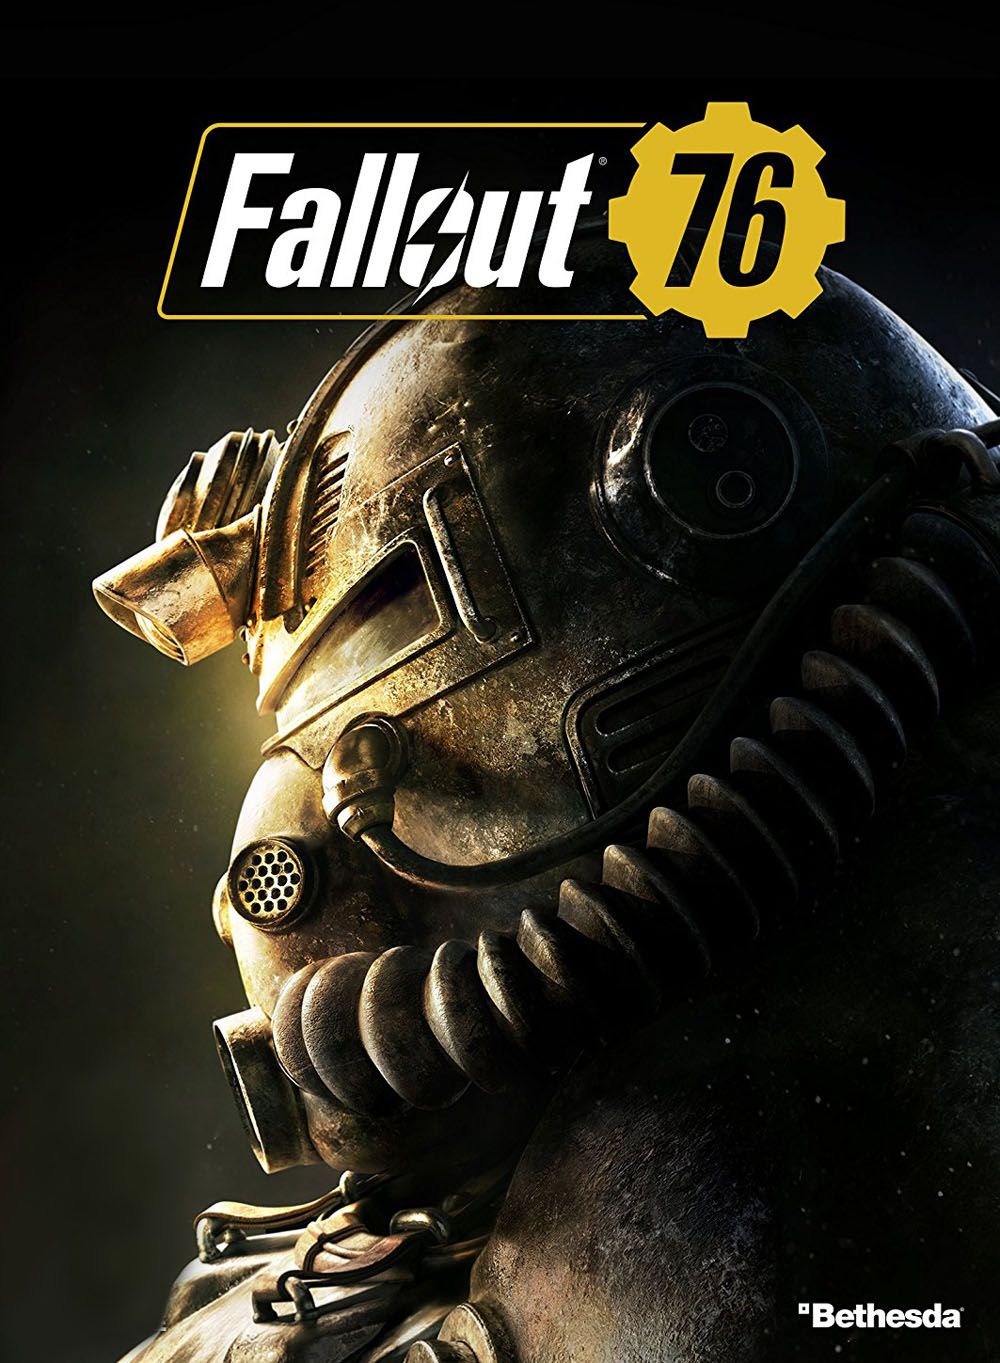 jaquette reduite de Fallout 76 sur PC